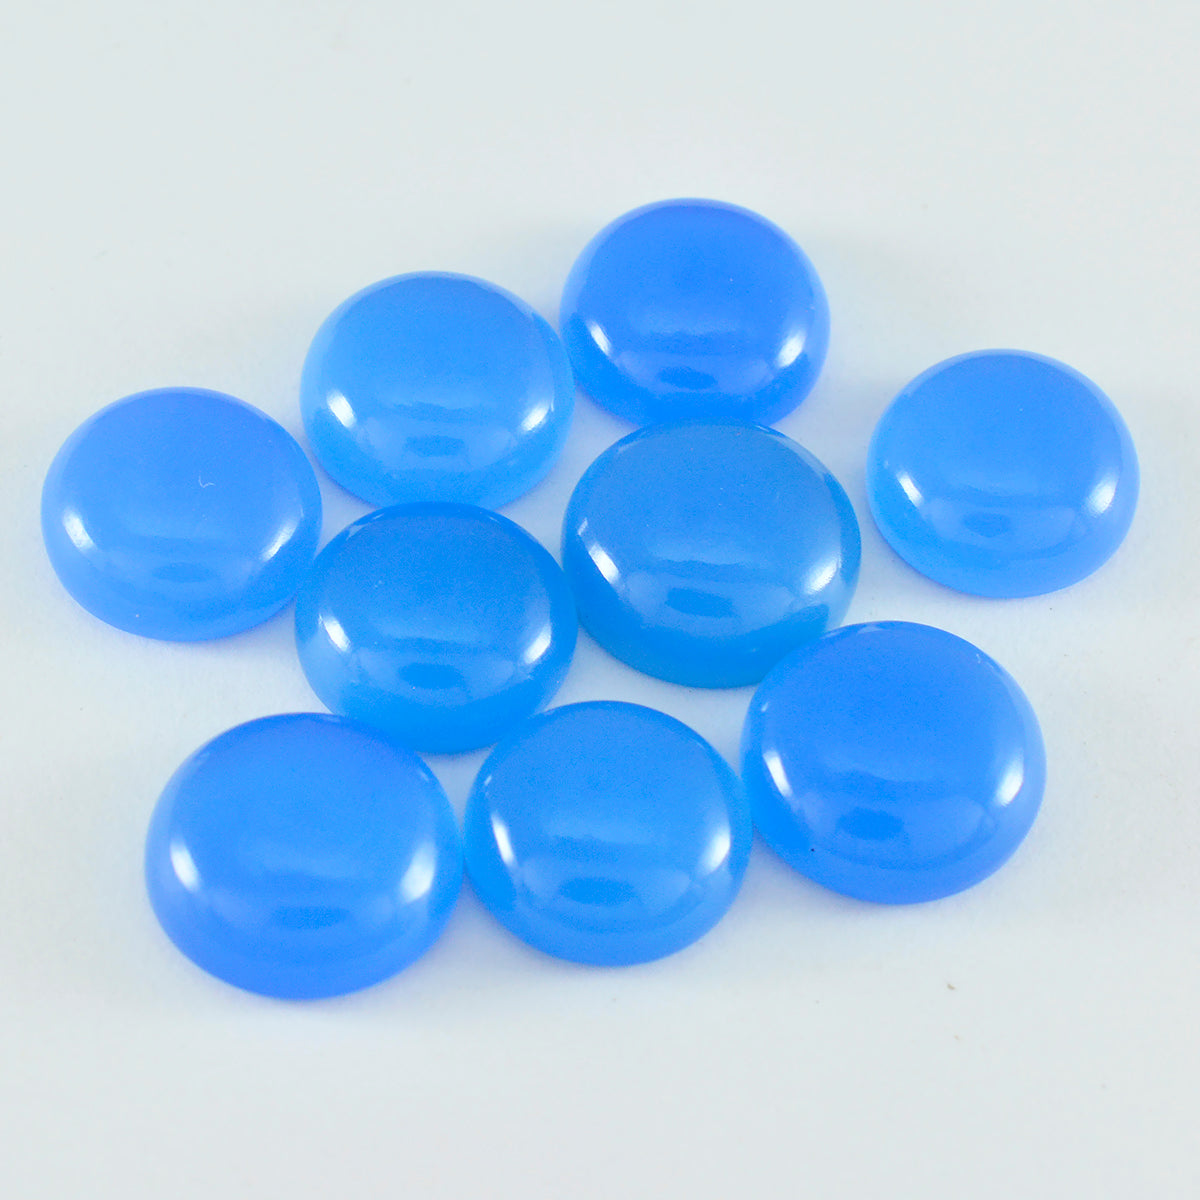 Riyogems 1PC blauwe chalcedoon cabochon 6x6 mm ronde vorm edelstenen van goede kwaliteit